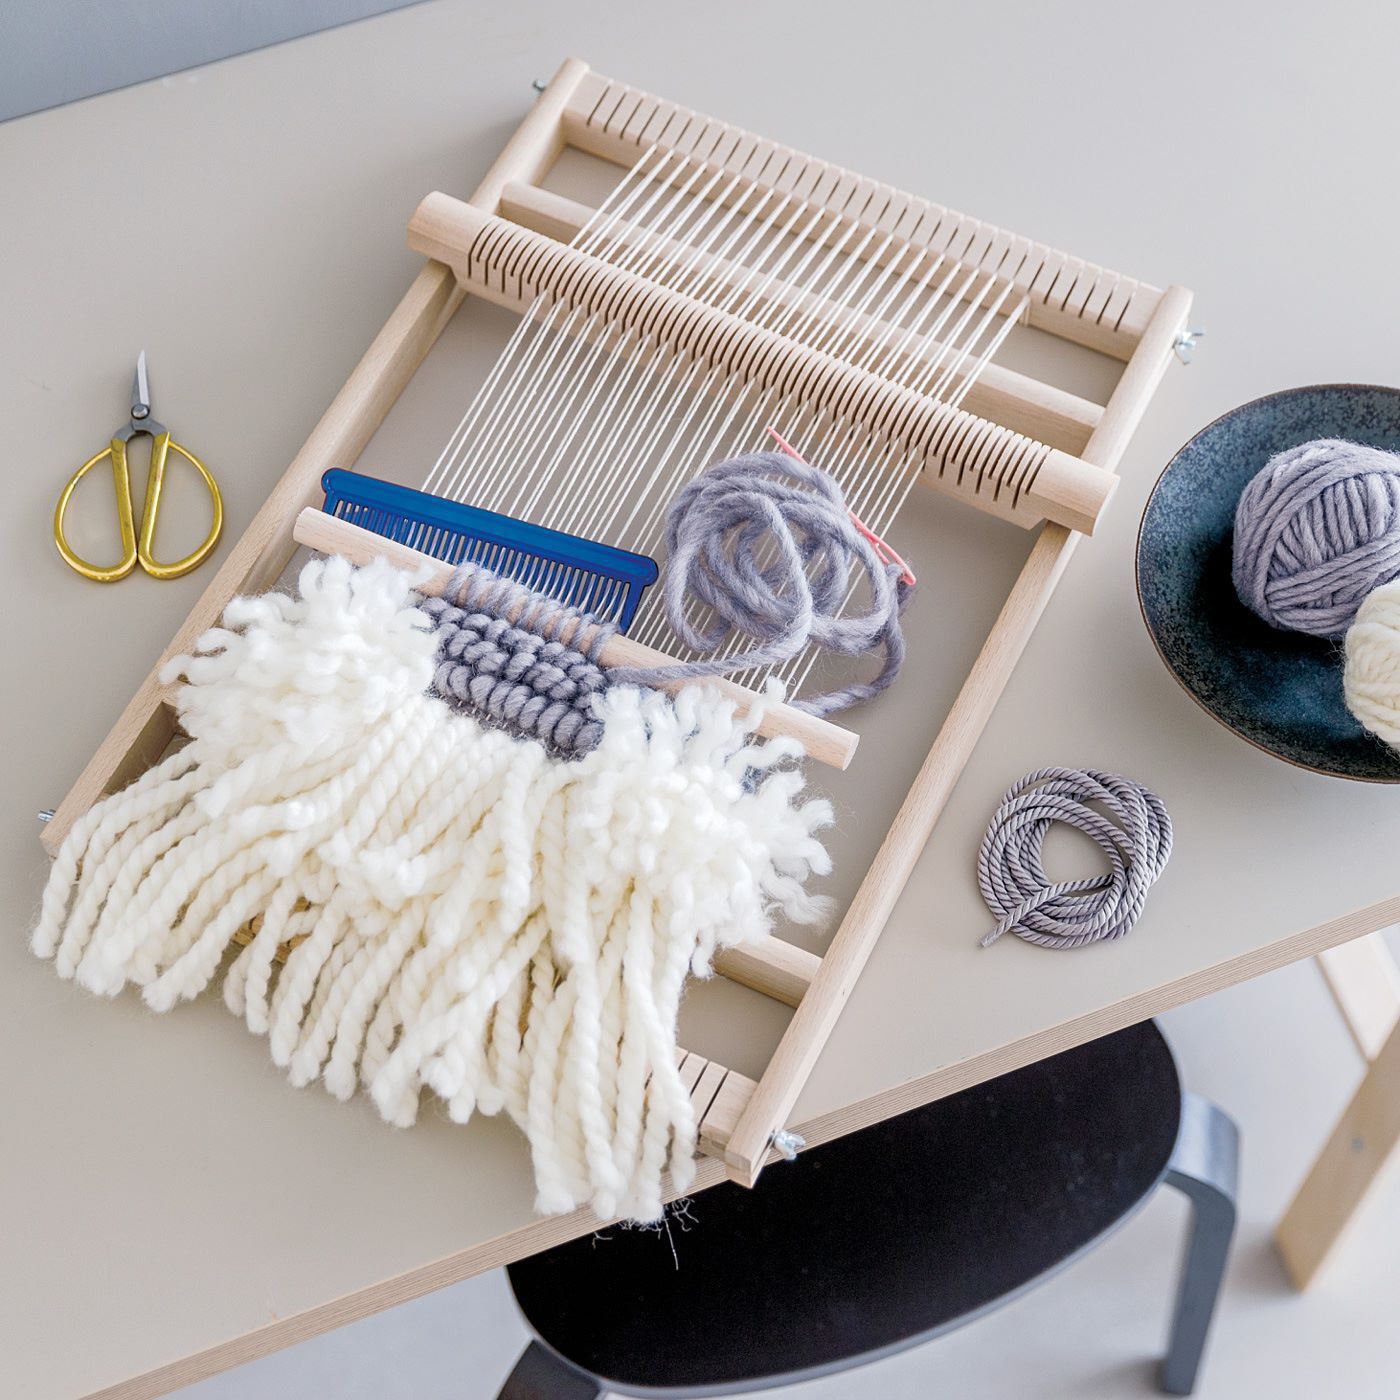 SeeMONO|シンプルなインテリアに映える　もふもふウィービングタペストリーキットの会|別売りの木製織り機があれば、よりスムーズに制作を楽しめます。キットに付属の厚紙台紙を織り機代わりにしても作れます。